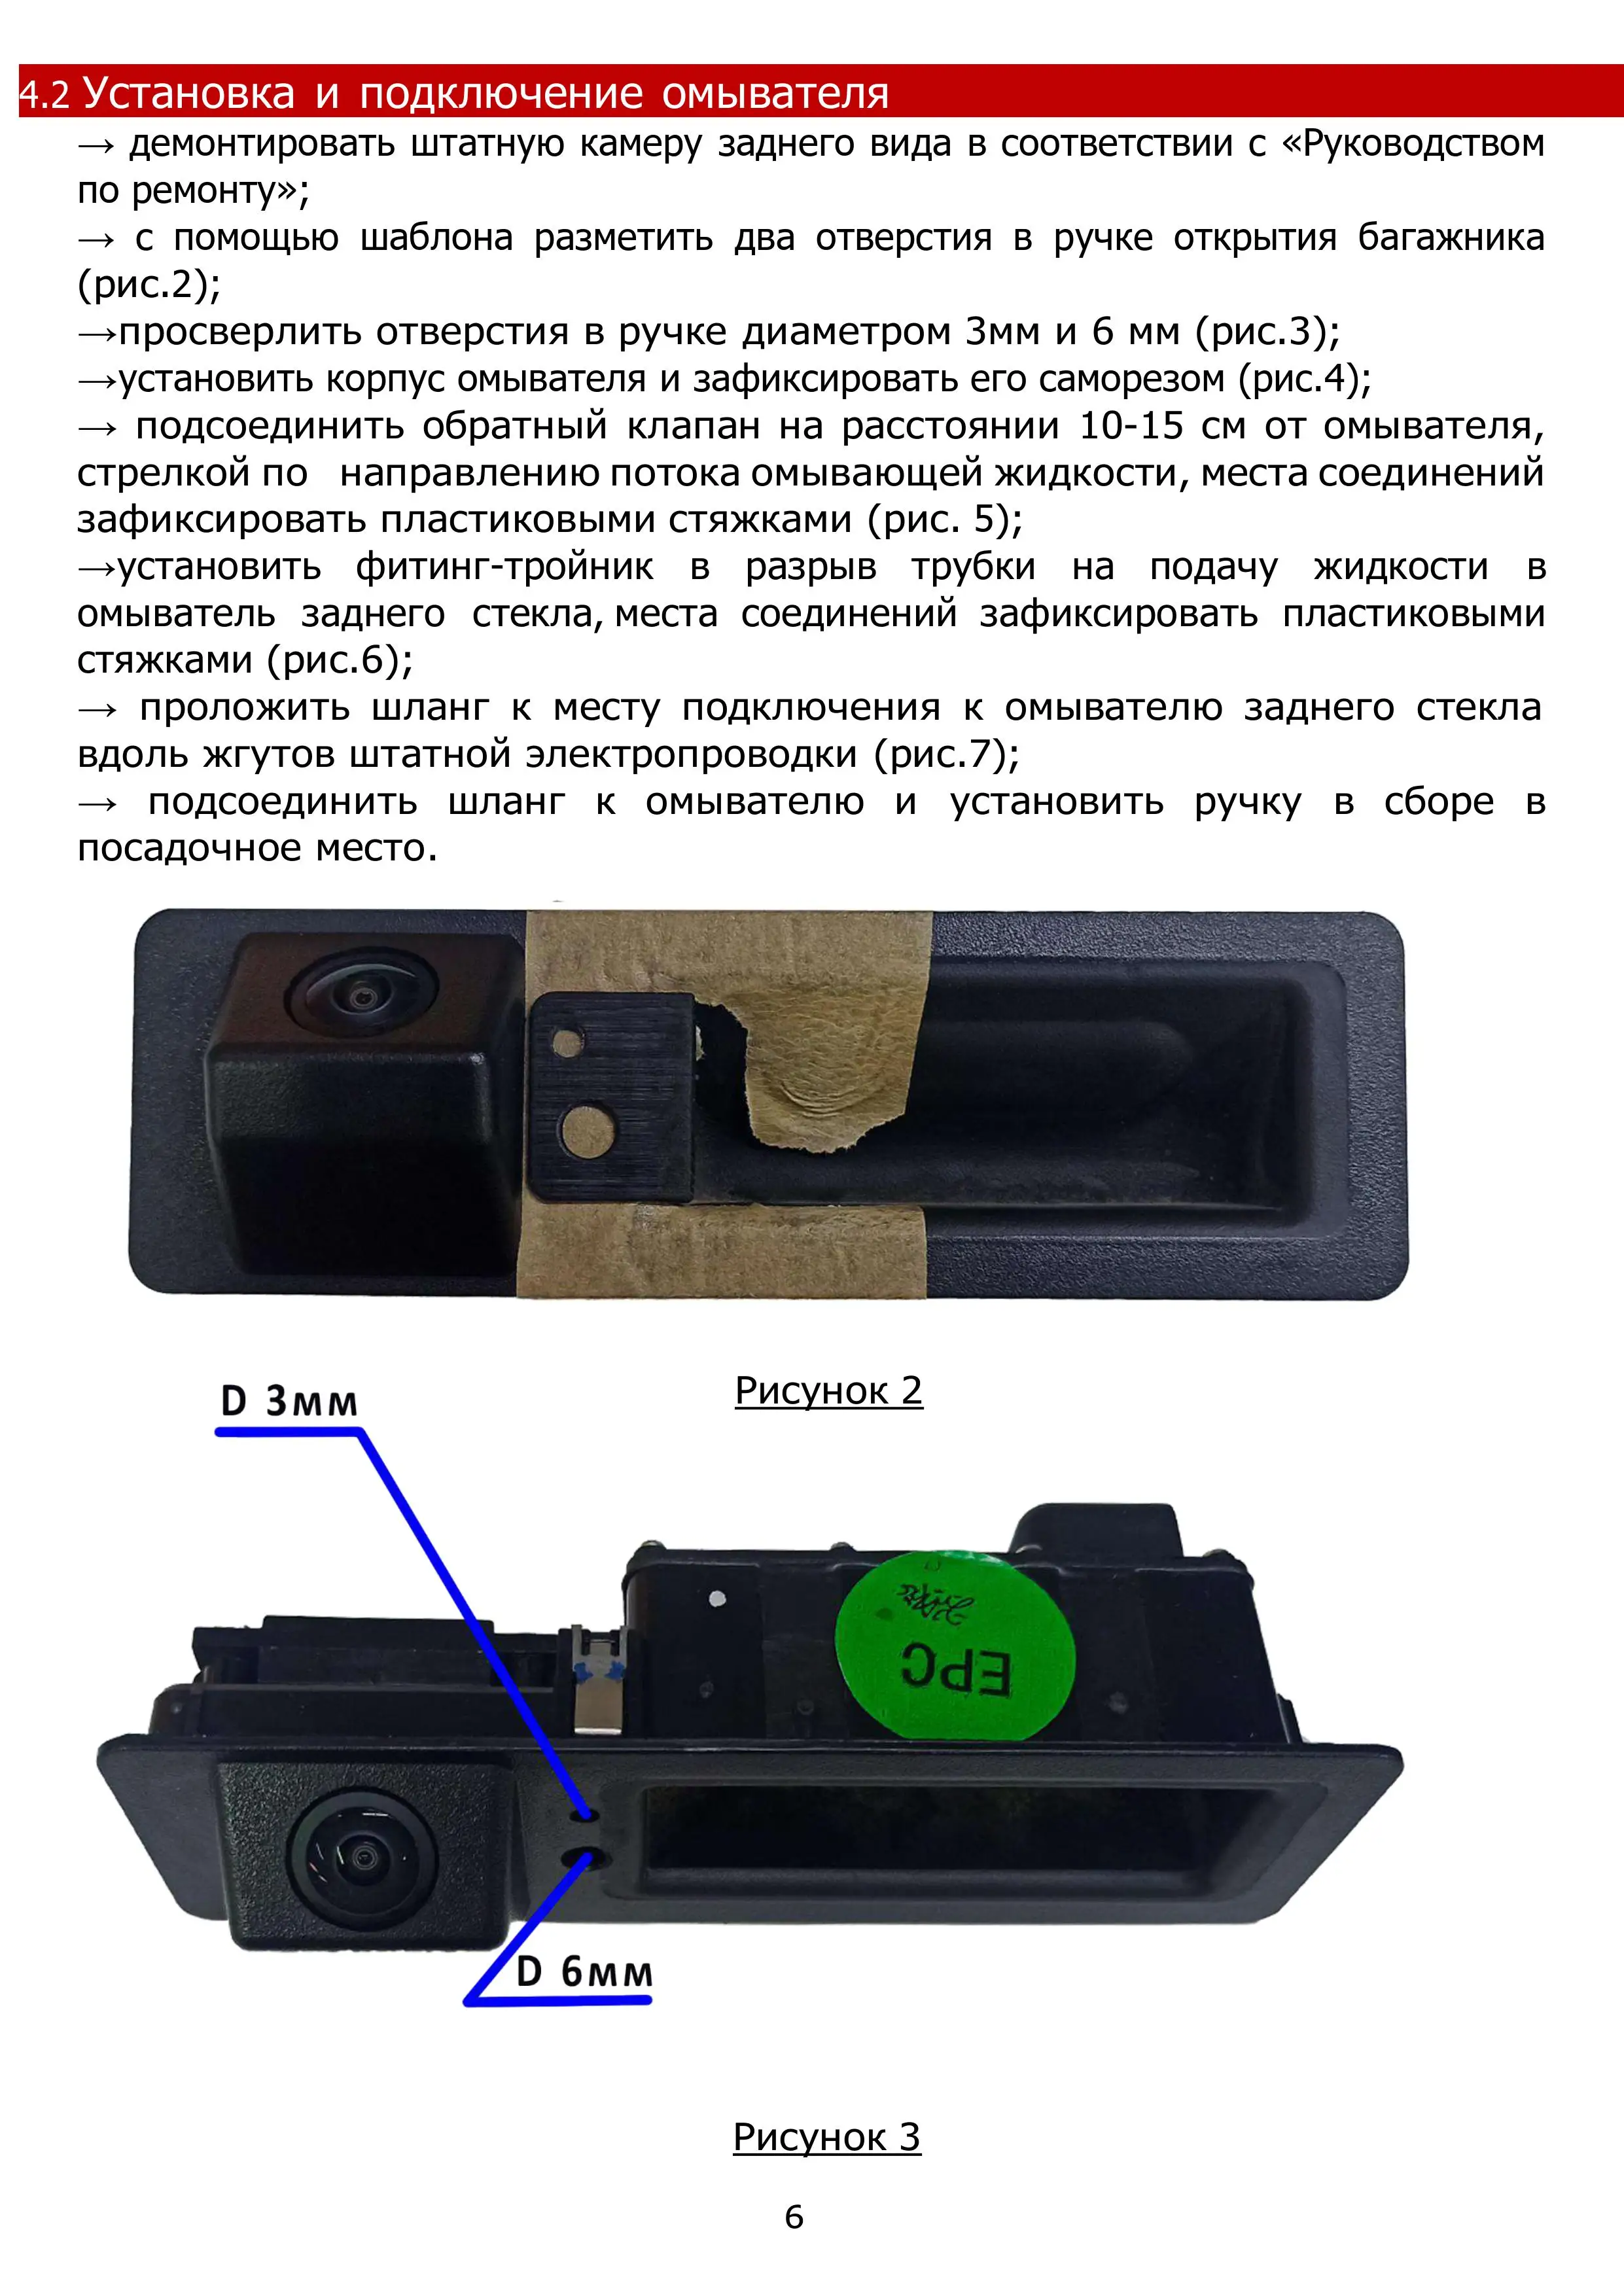 Комплект омывателя камеры заднего обзора - установка и преимущества